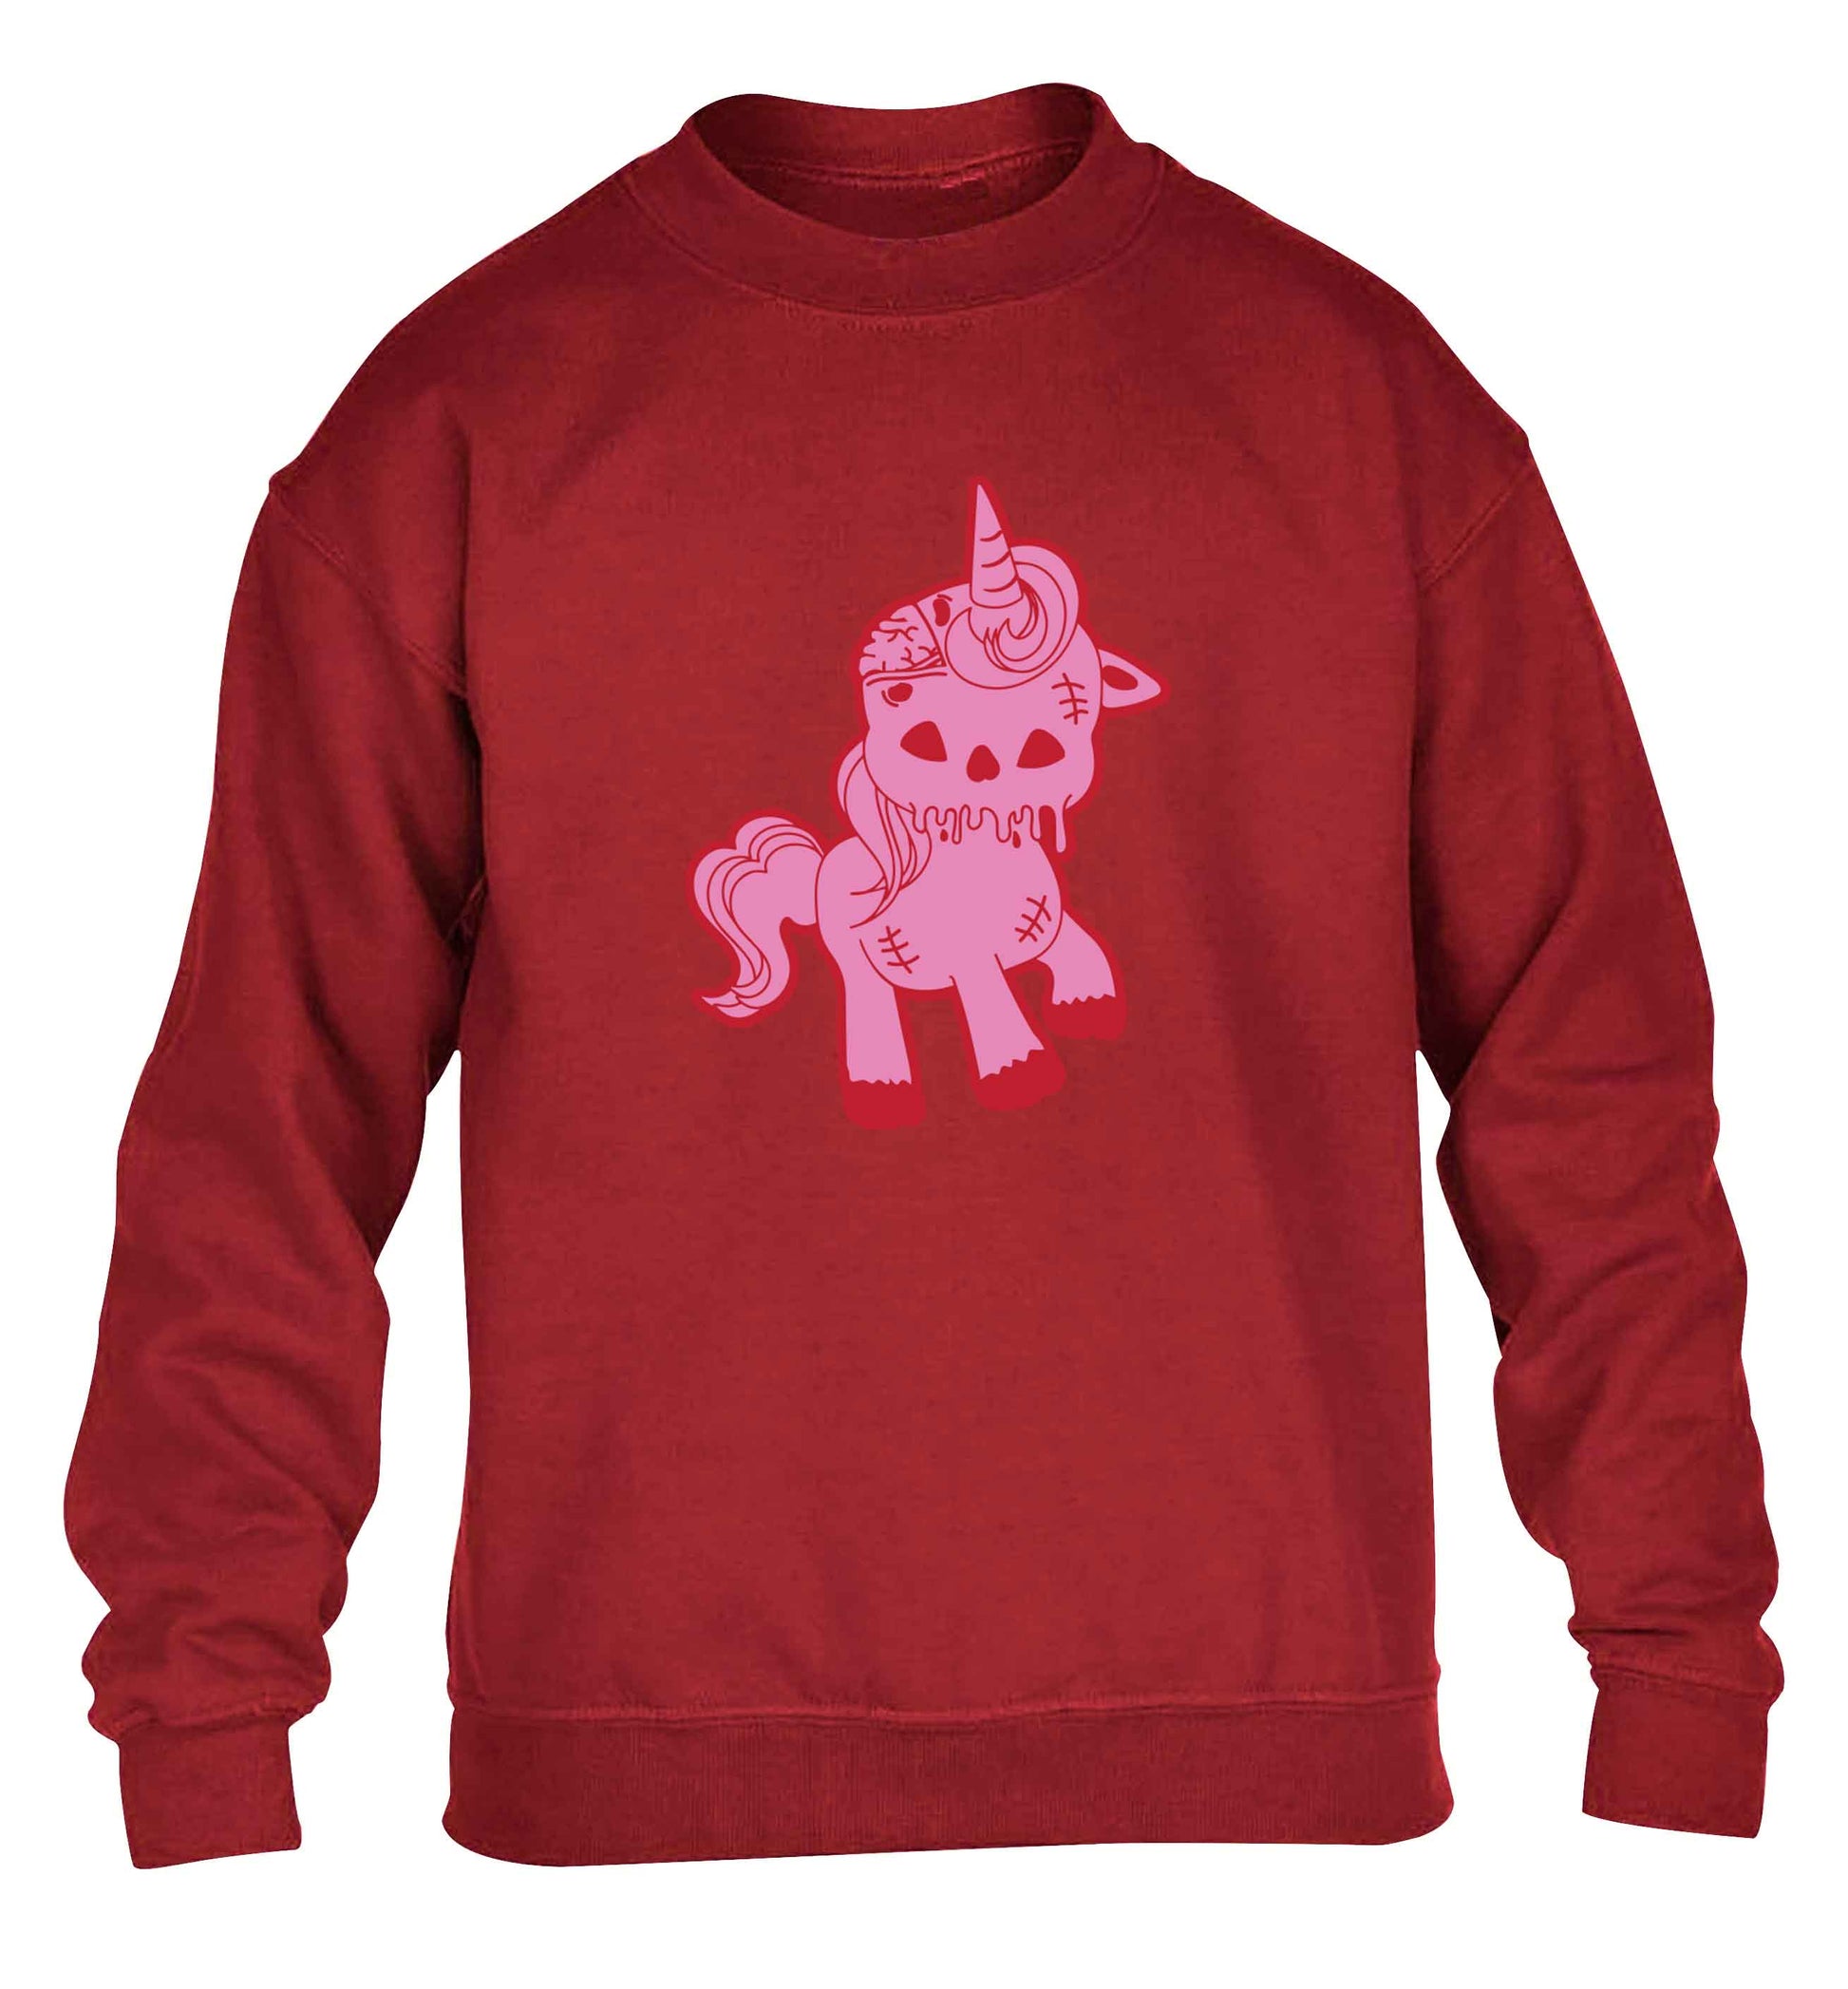 Zombie unicorn zombiecorn children's grey sweater 12-13 Years